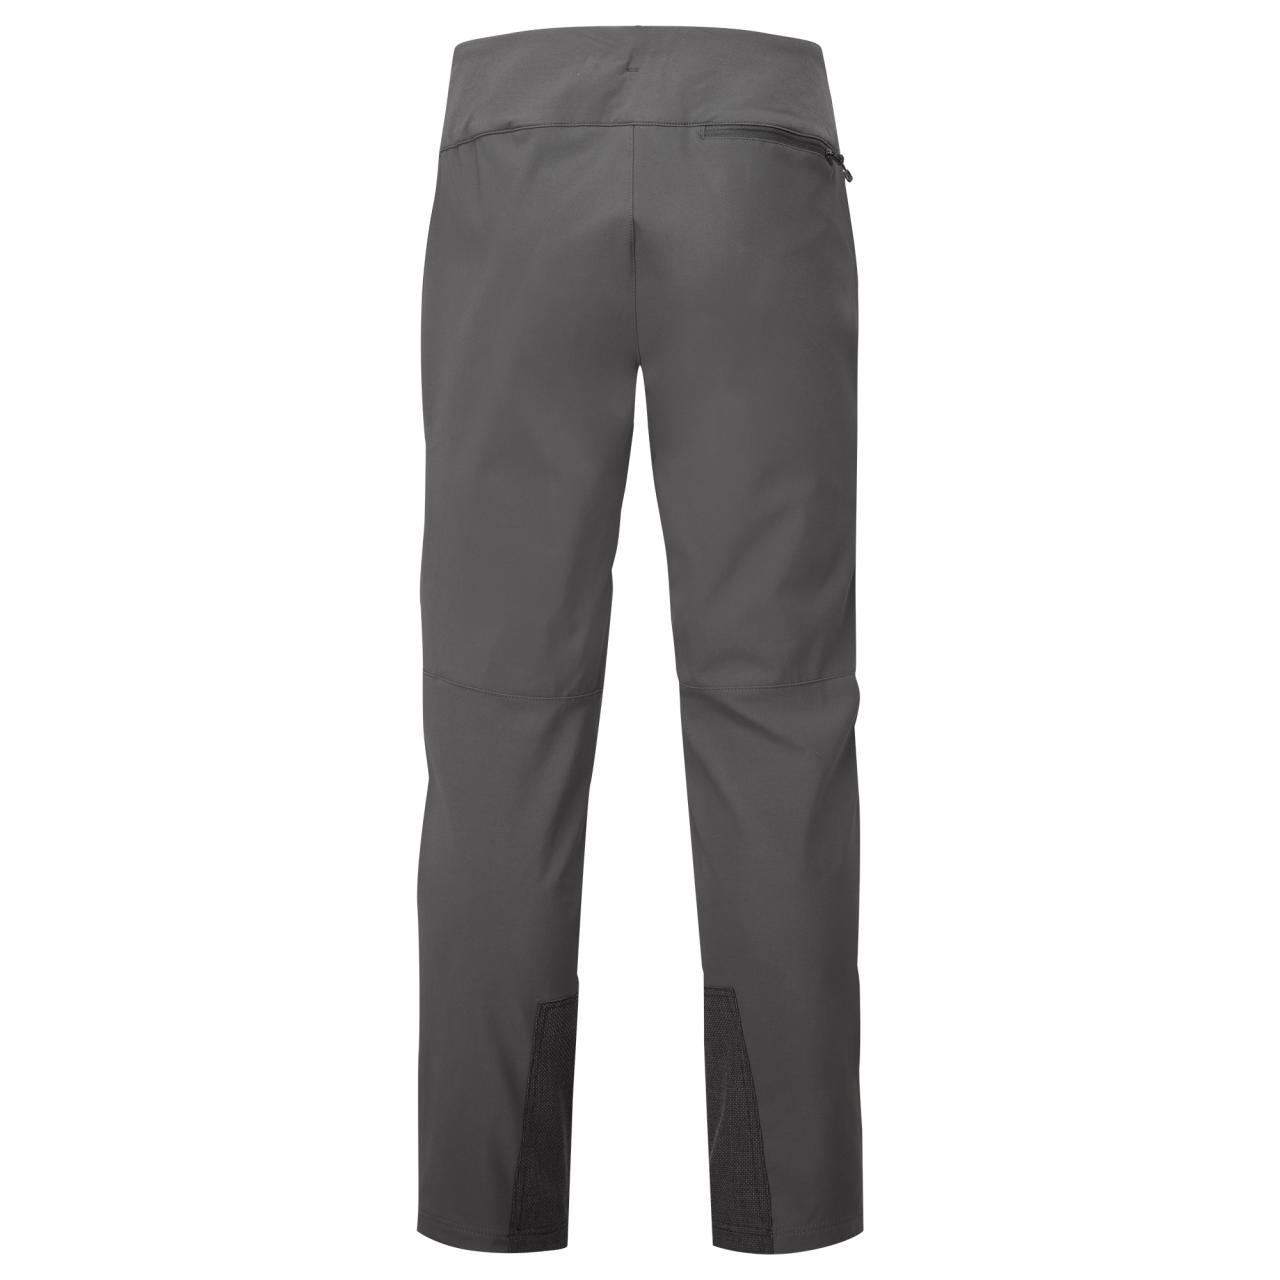 TENACITY XT PANTS SHORT LEG-MIDNIGHT GREY-30/S pánské kalhoty tmavě šedé